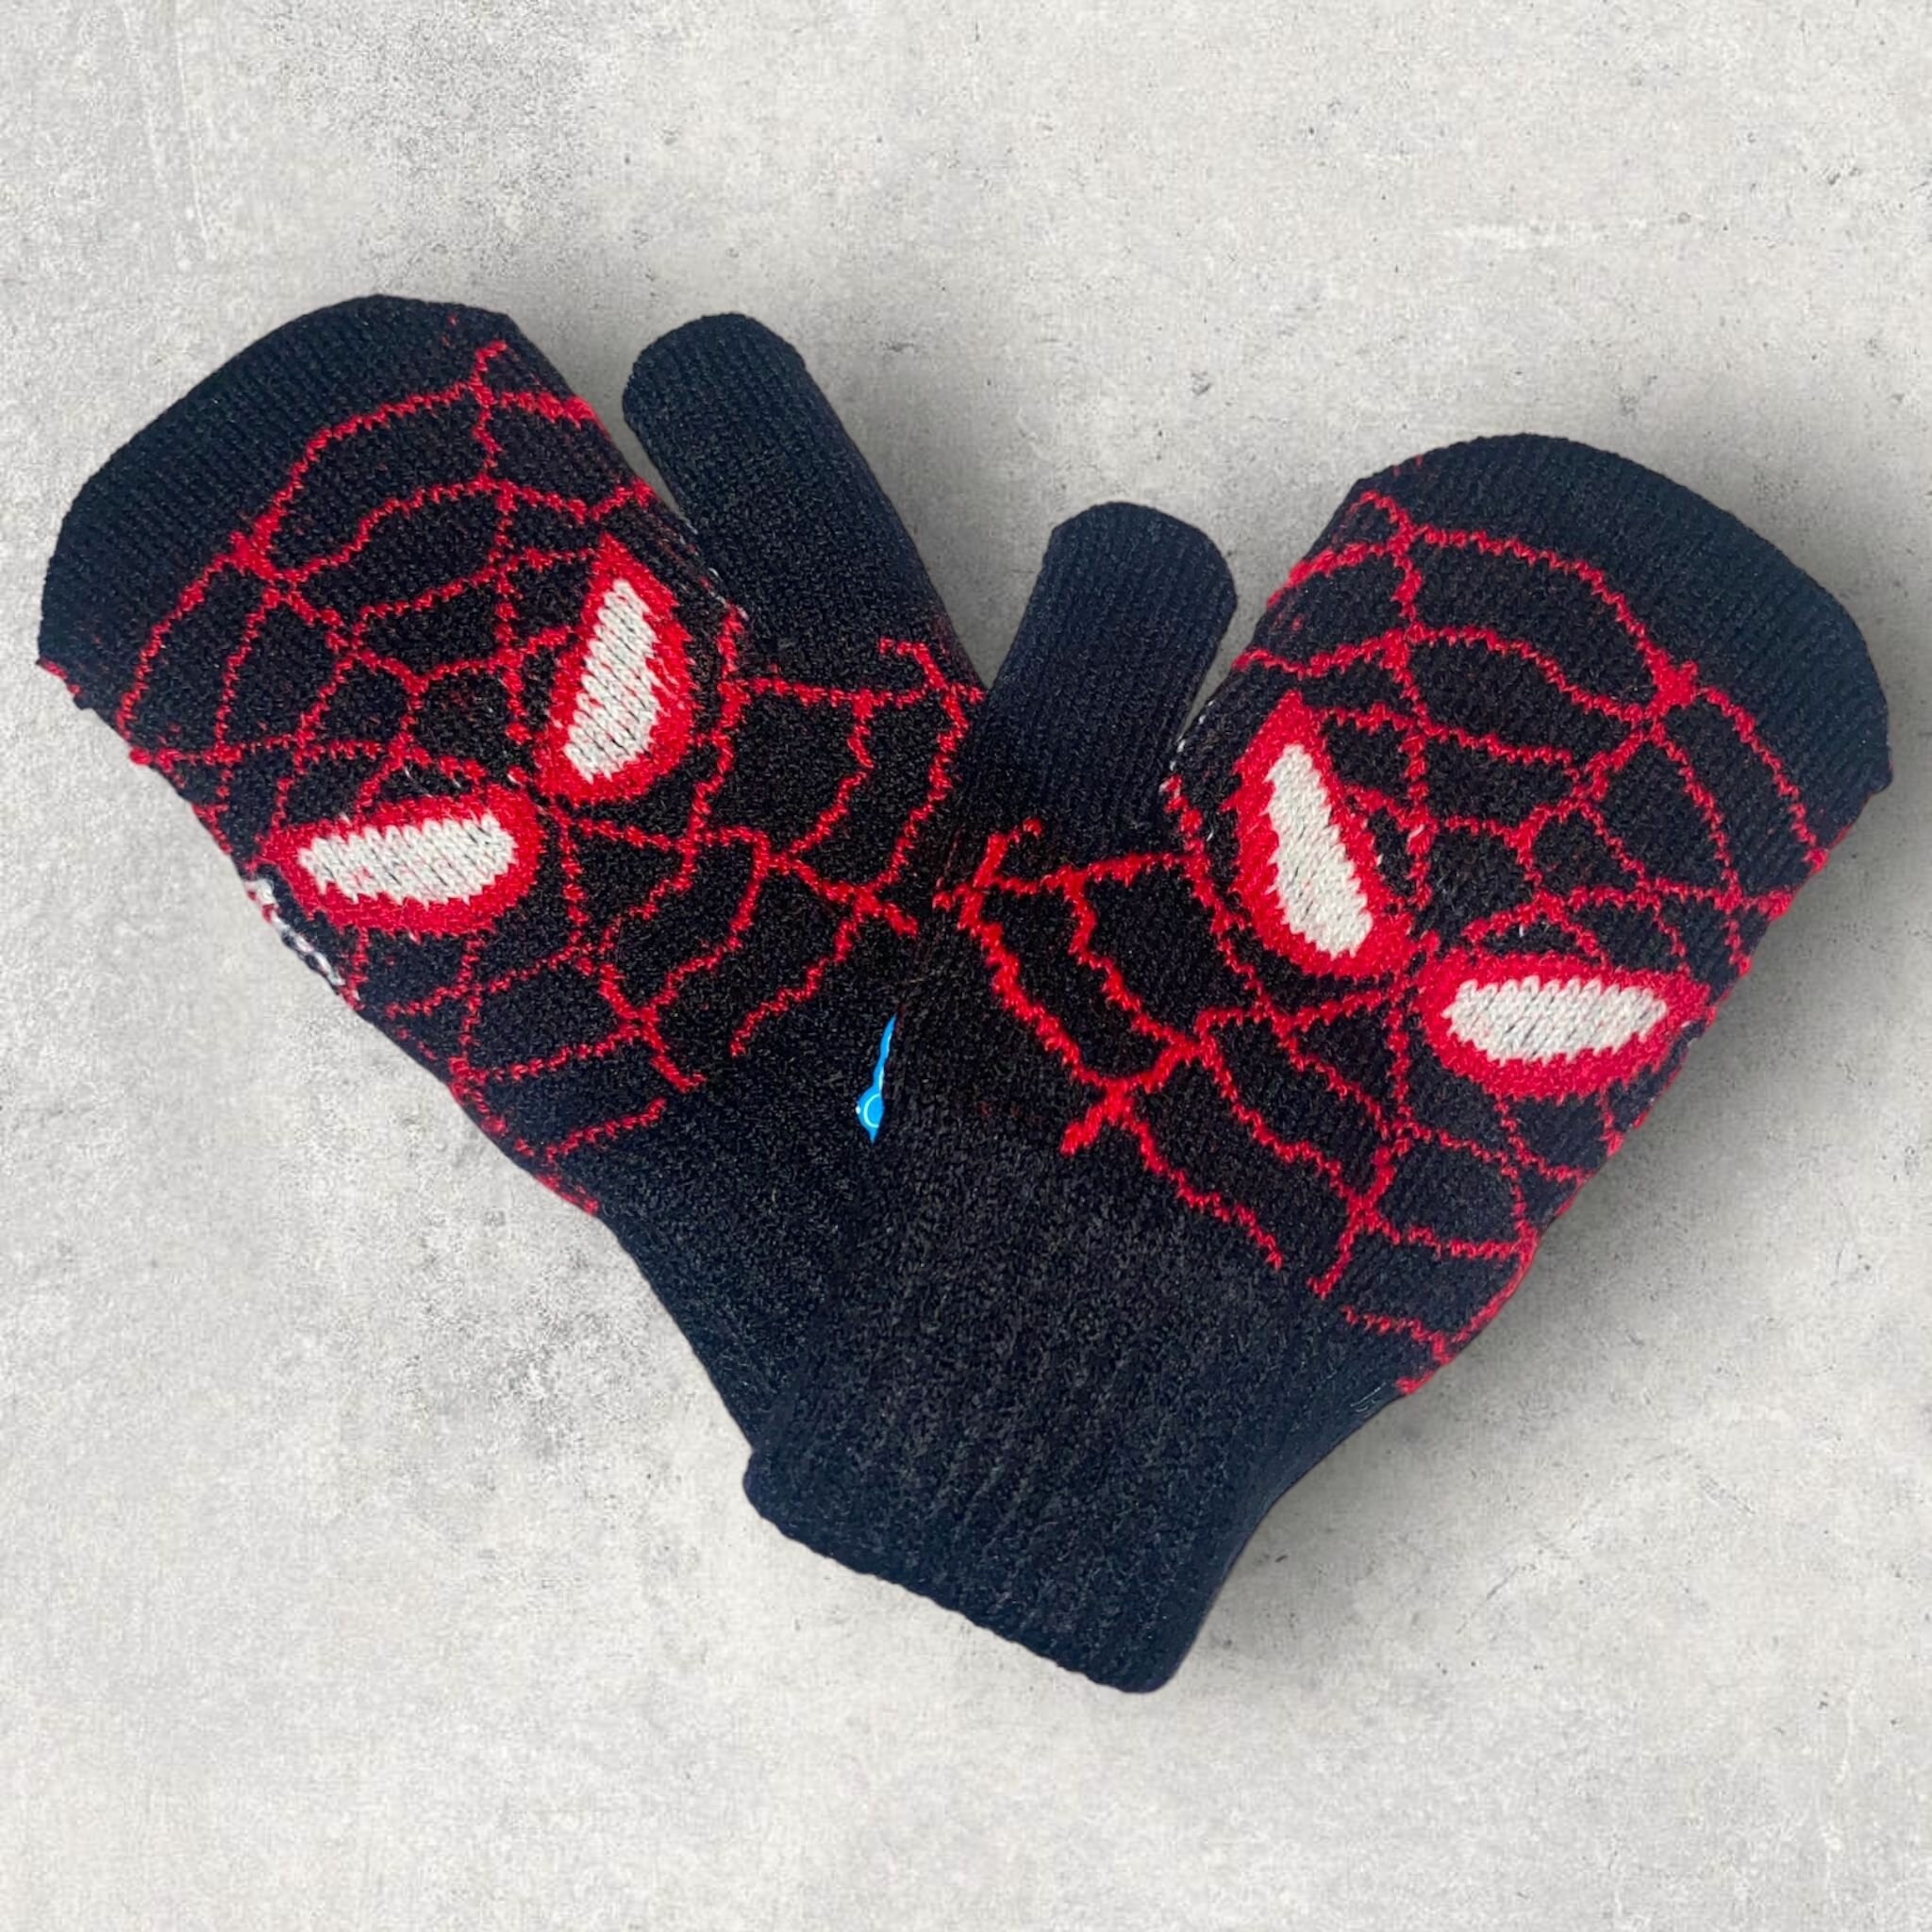 Варежки детские для мальчика Человек паук/Перчатки для мальчика Человек Паук/Spider Man